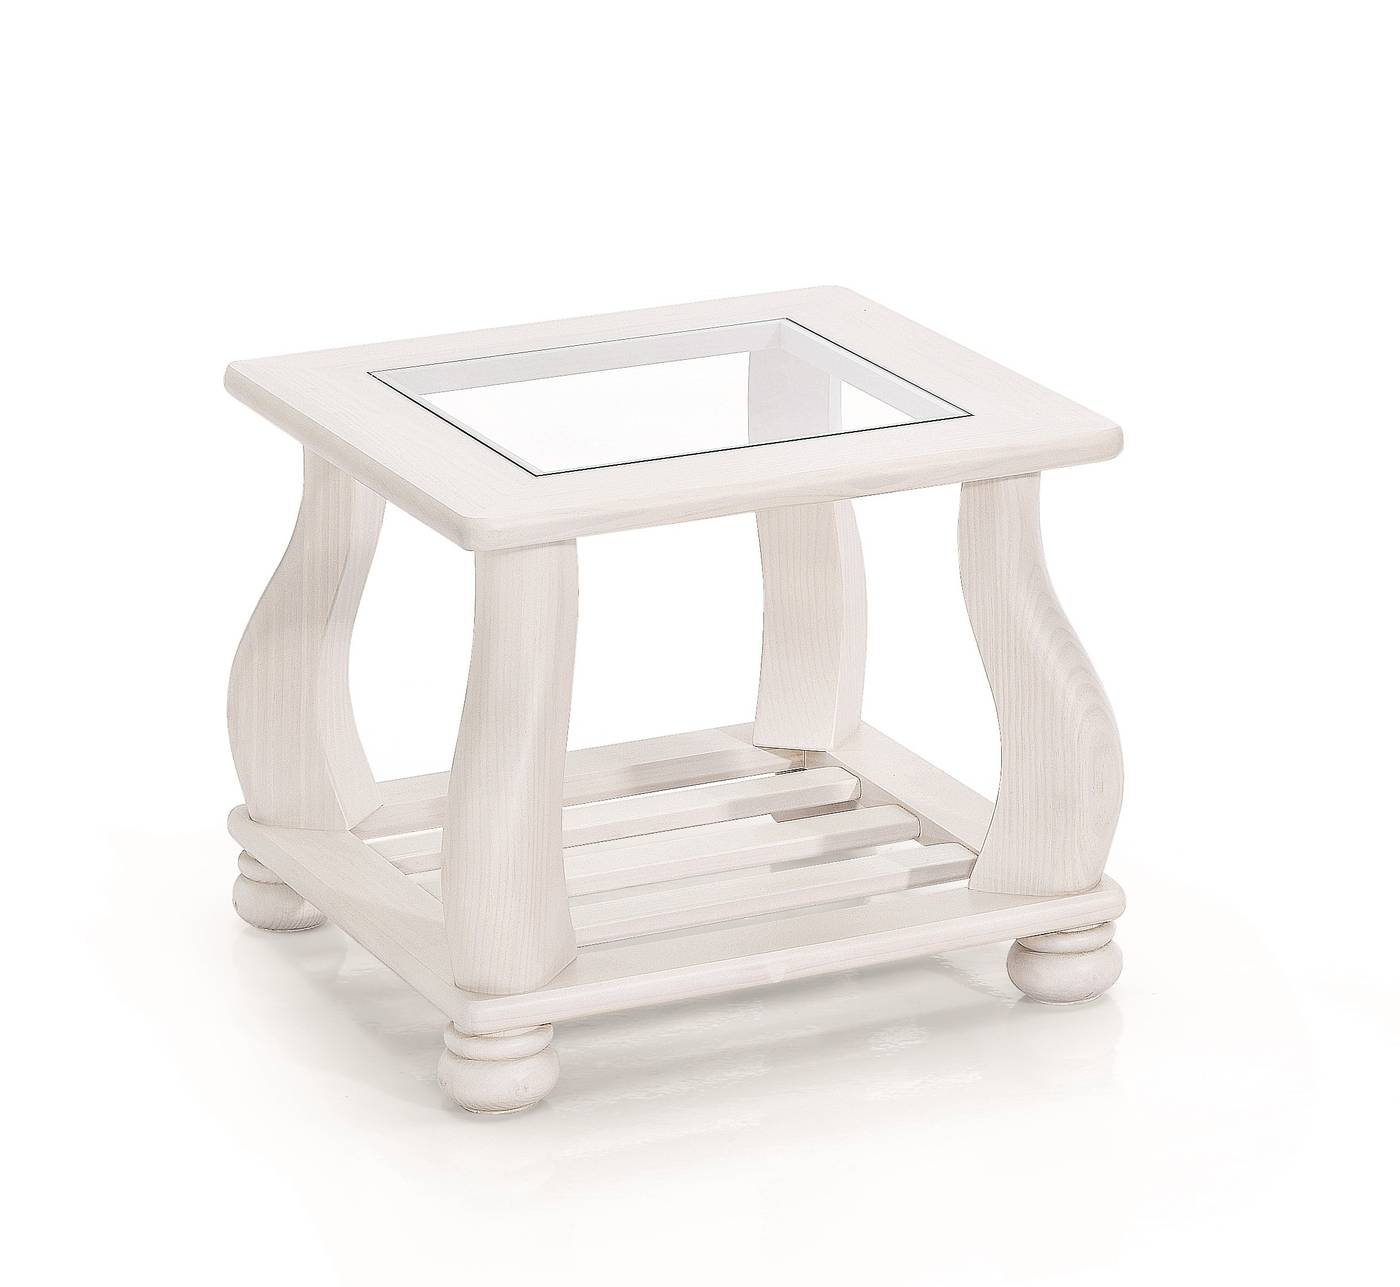 Mesa de rincón de madera de pino, con revistero y tapa de cristal. Disponible en varios colores.